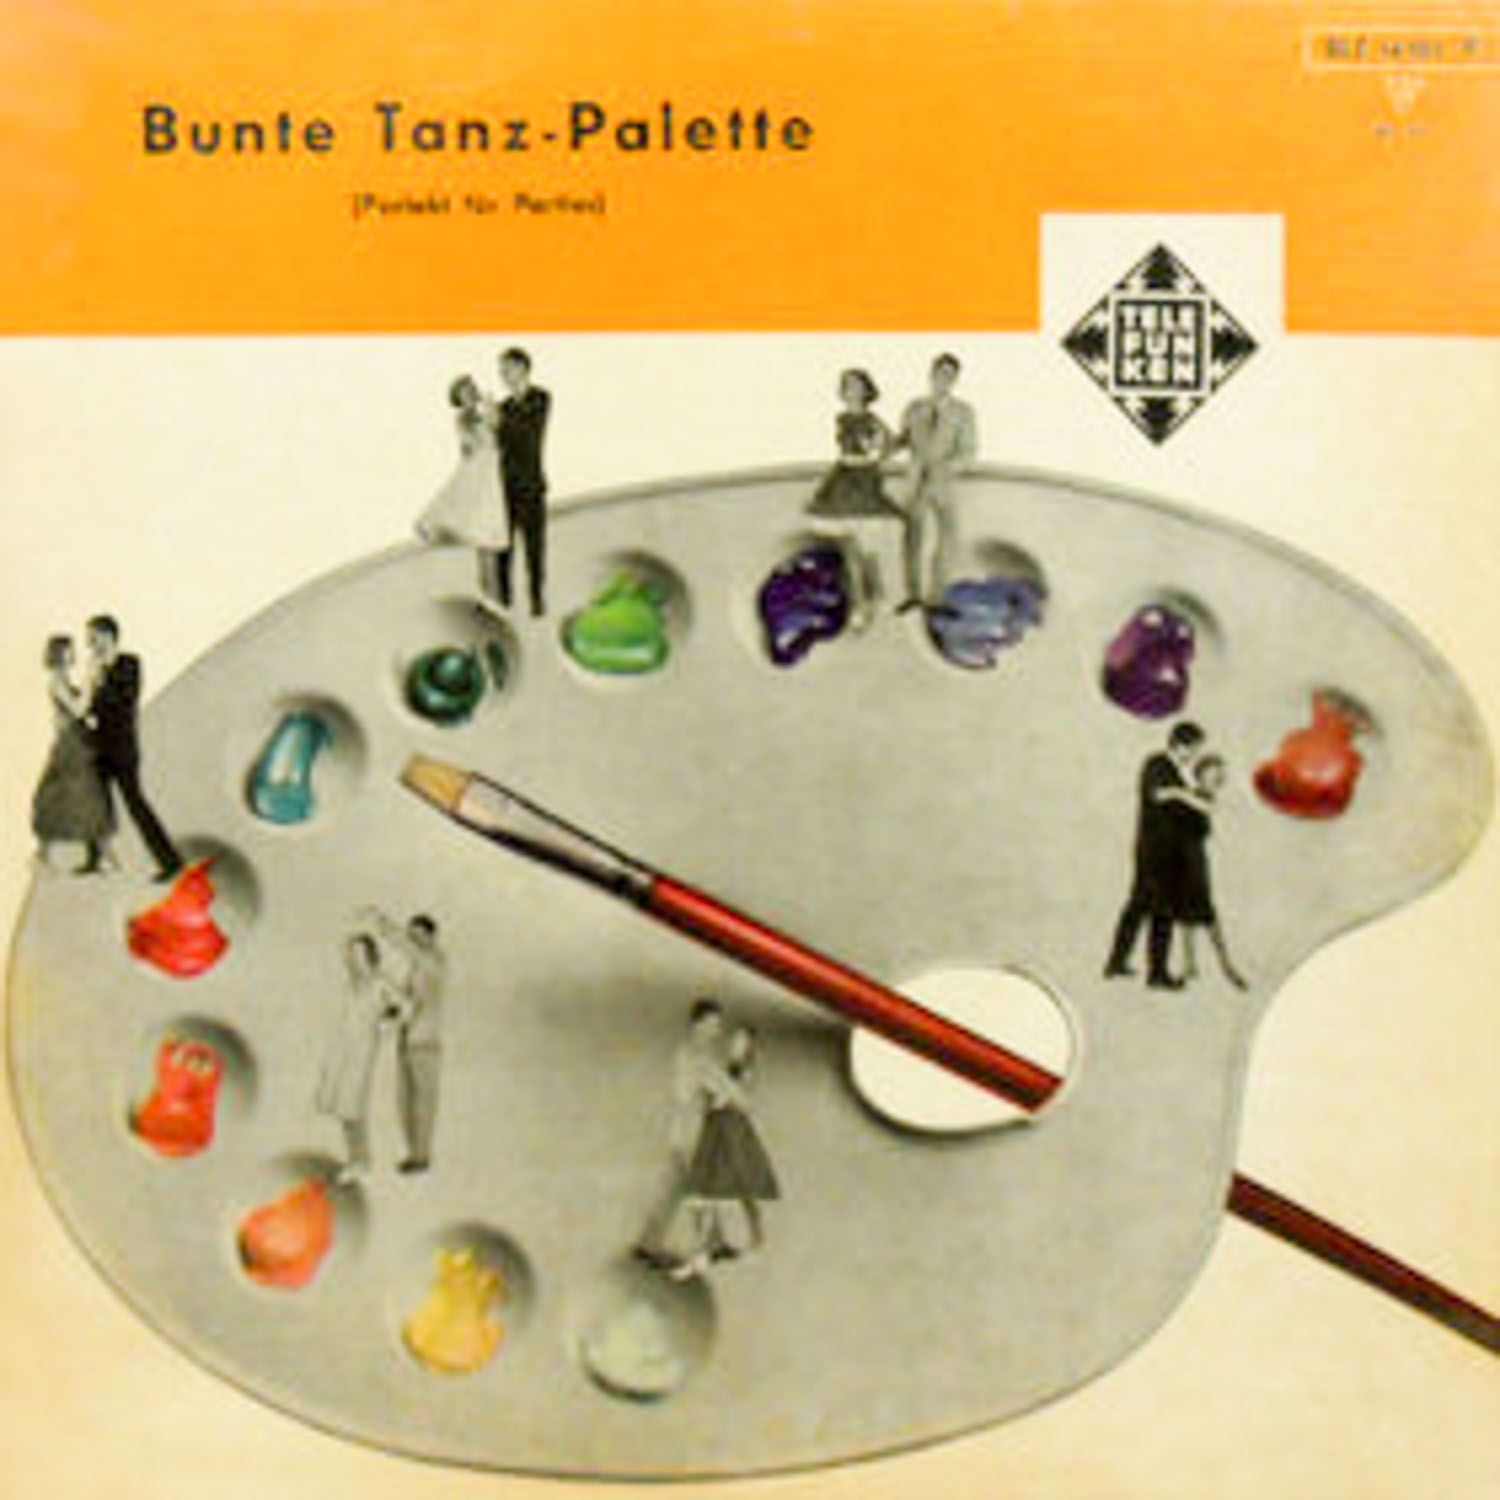 Div.  Bunte Tanz-Palette (Perfekt für Parties) (BLE 14105 - P)  *LP 12'' (Vinyl)*. 